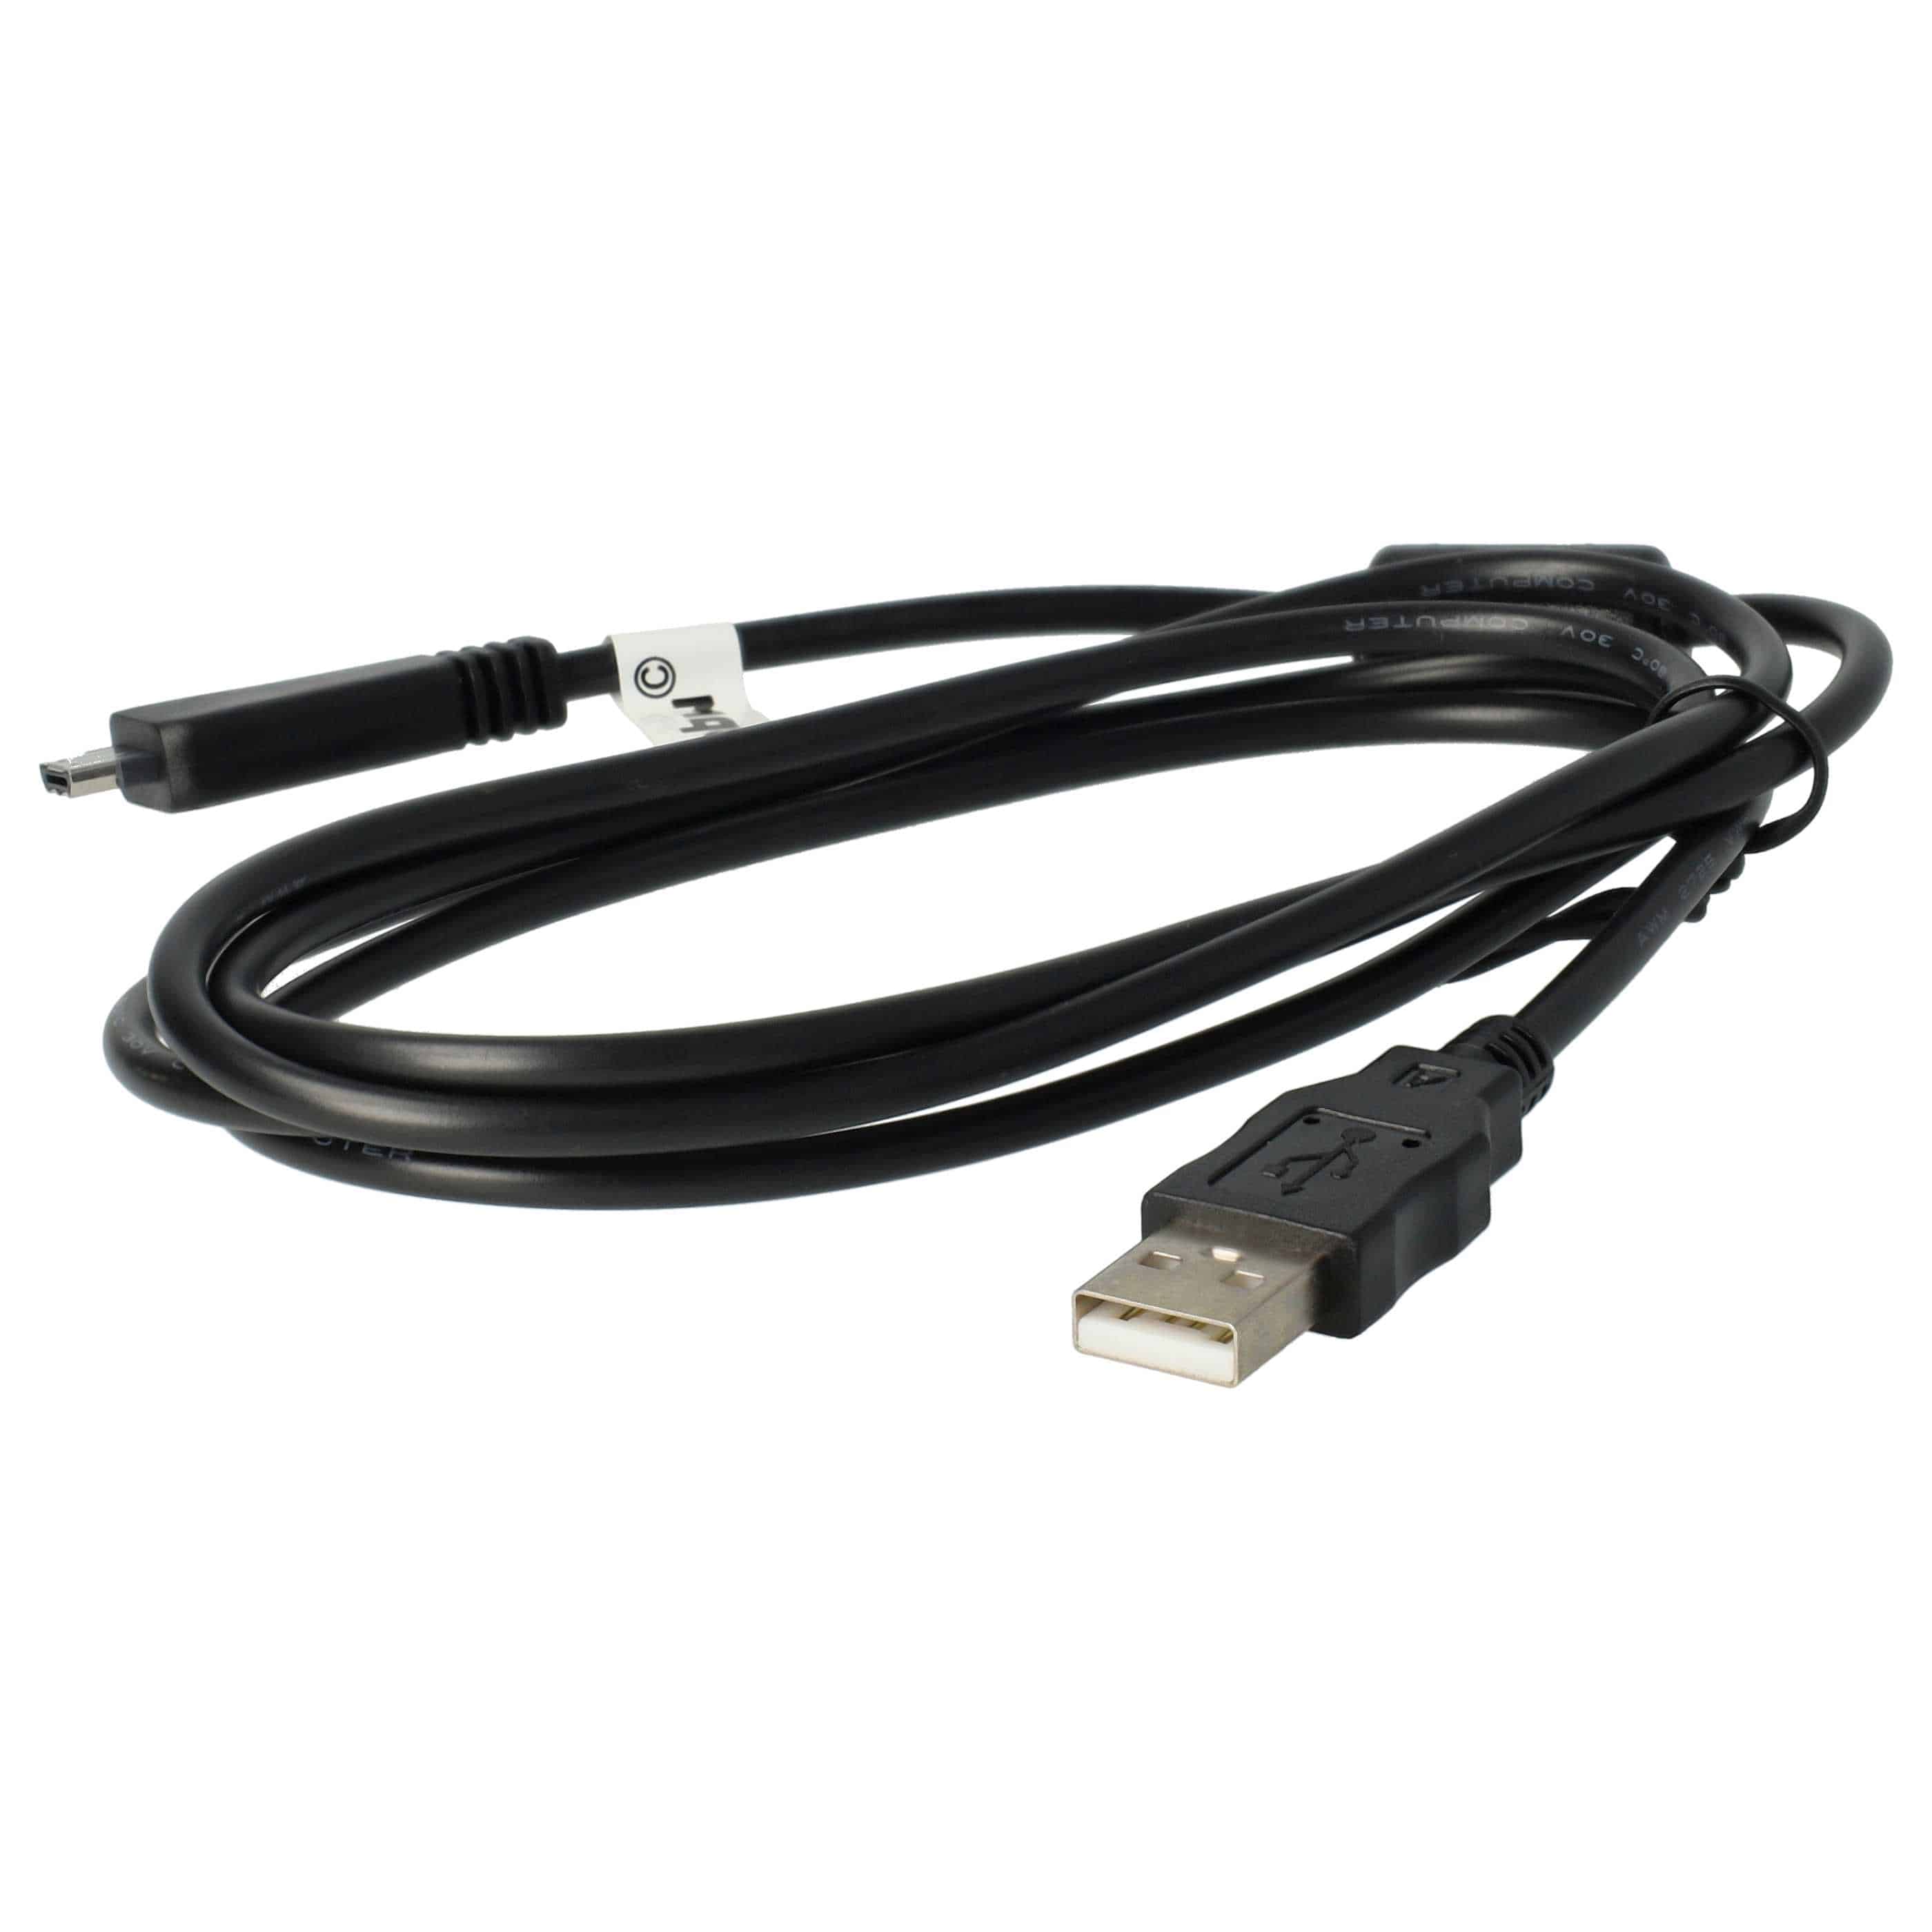 Cable de datos USB reemplaza Sony VMC-MD3 (sin función AV) para cámaras Sony - 150 cm